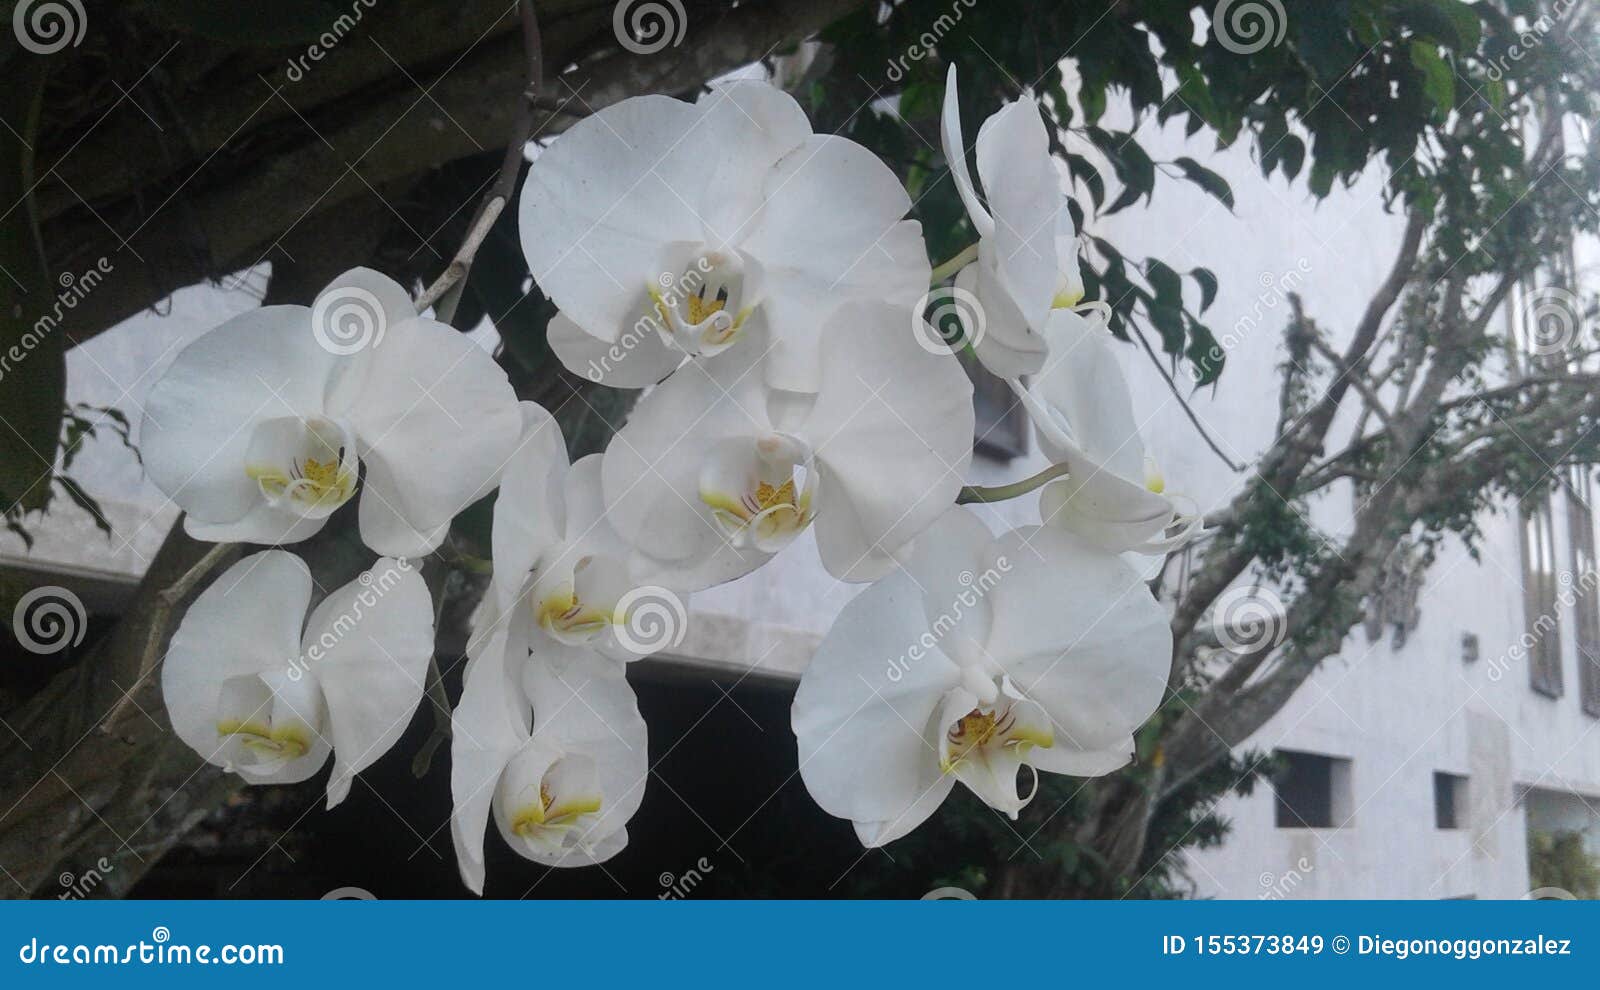 white orchids flower plants nature garden landscape